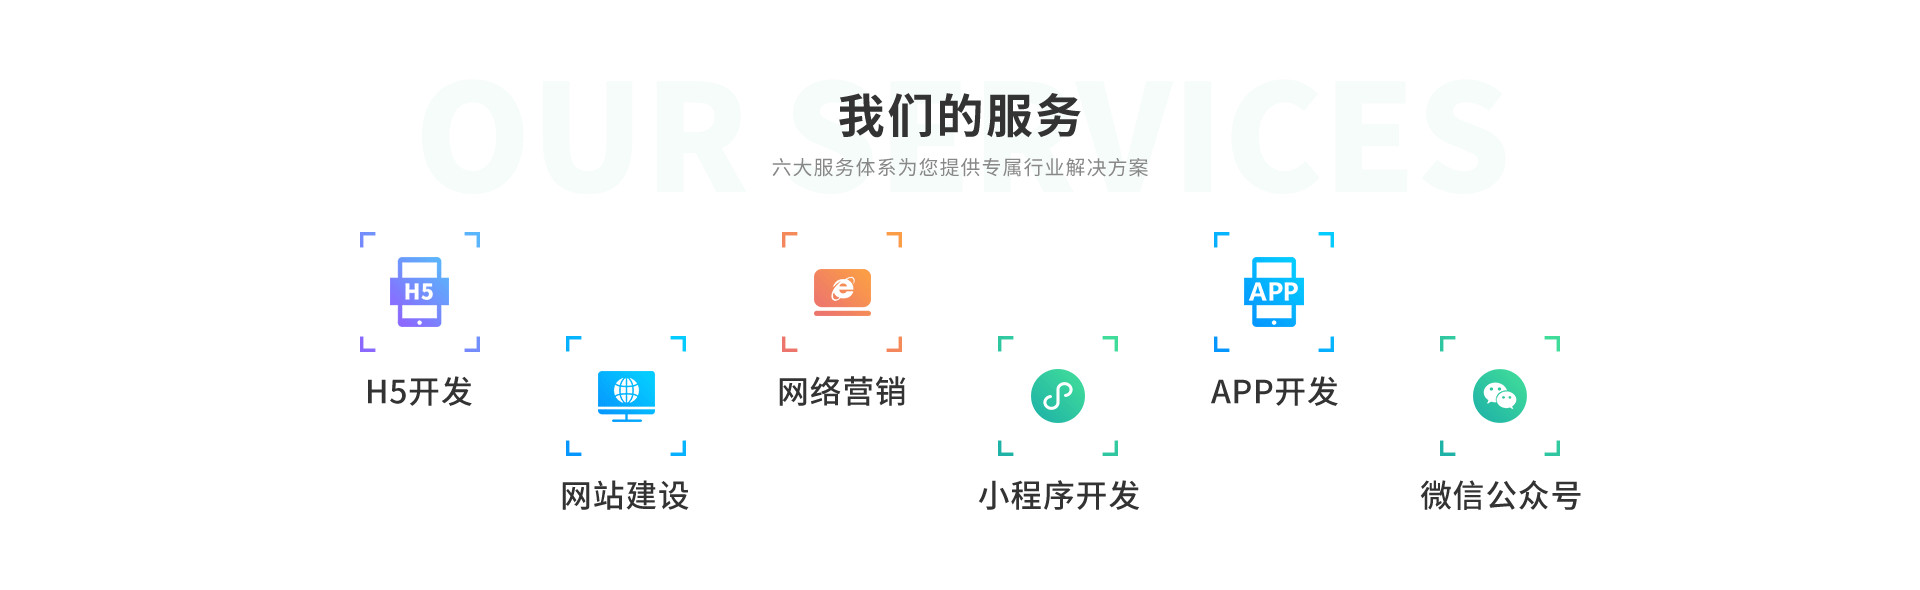 广安市三级分销商城系统定制开发模式分析